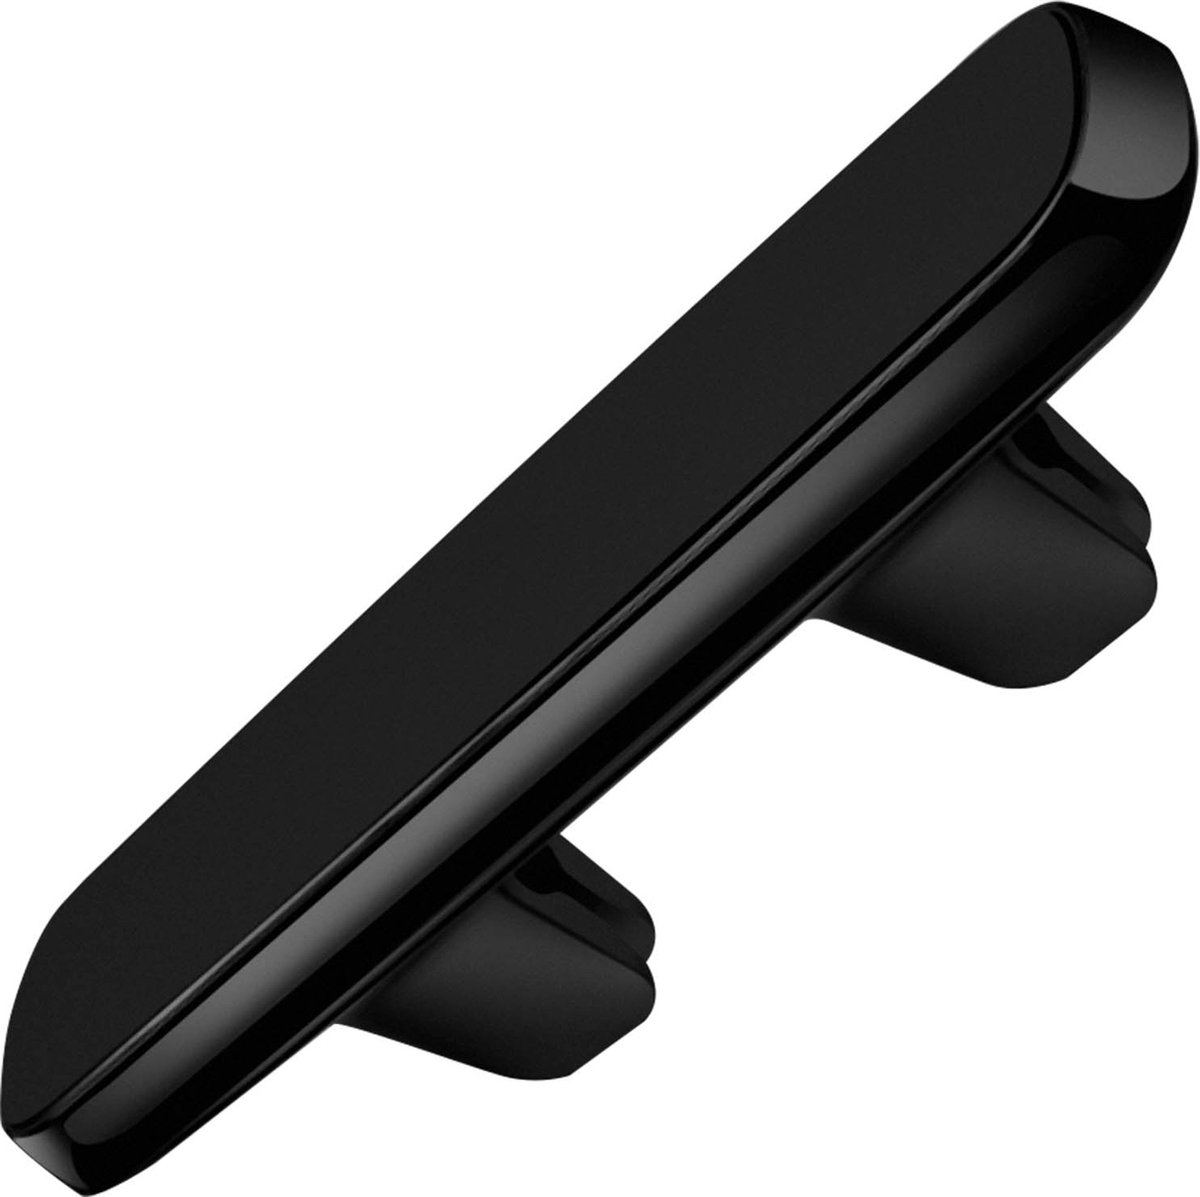 Magnetische autohouder voor smartphone/tablet met 2 ventilatieopeningen - Zwart